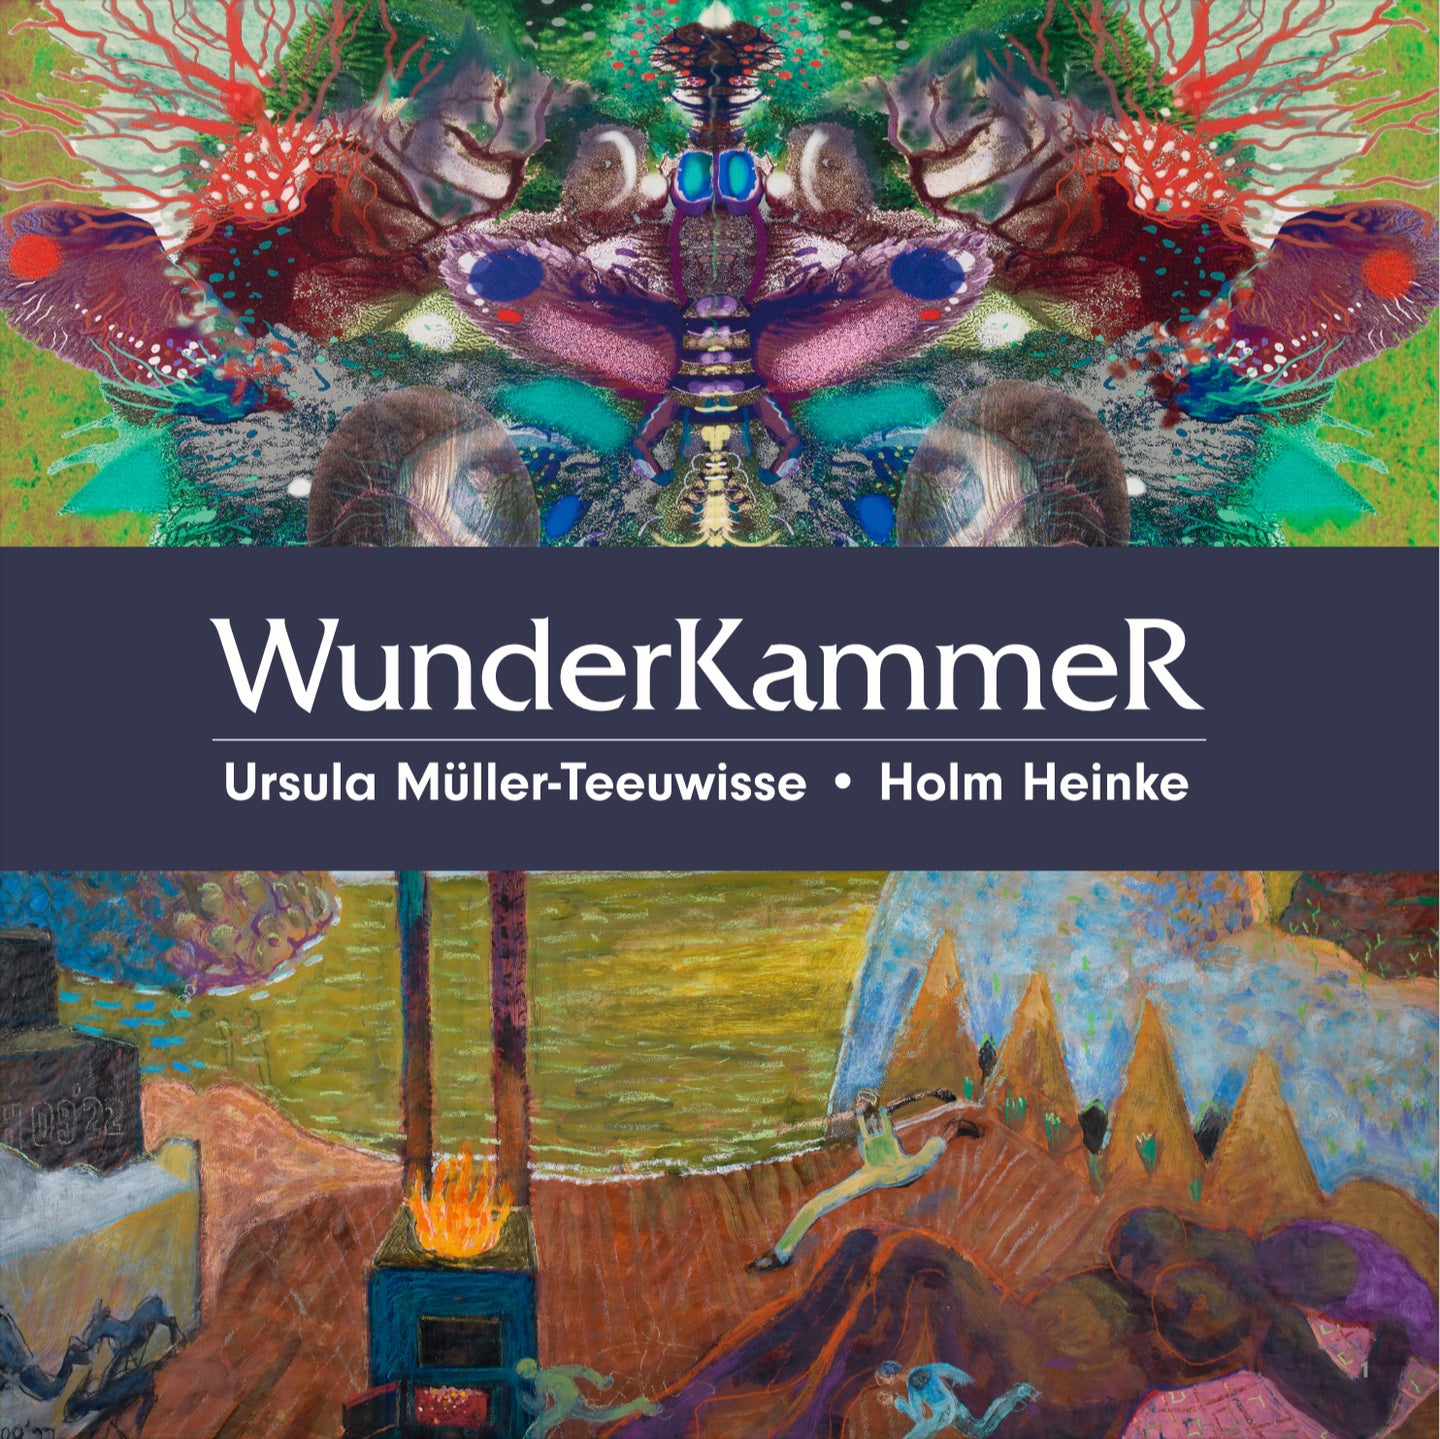 Wunderkammer catalog - digital